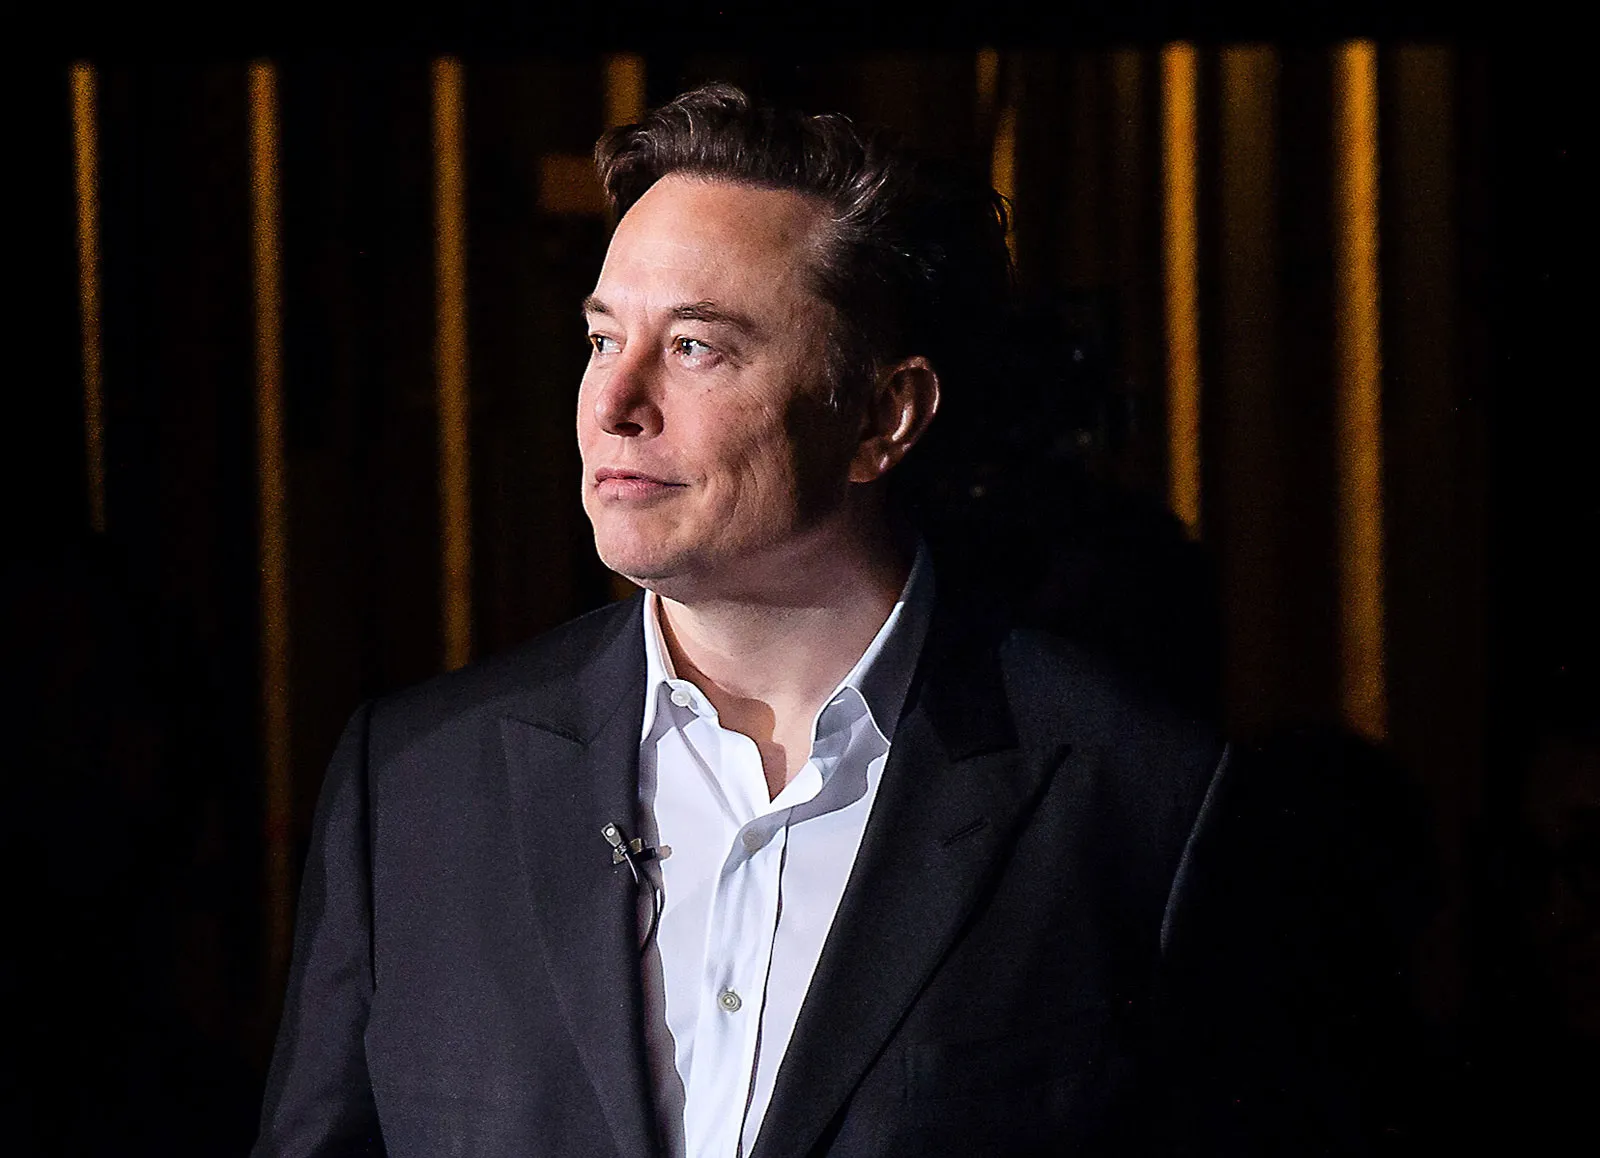 Investor Skepticism Surrounds Elon Musk's Massive Tesla Compensation Deal